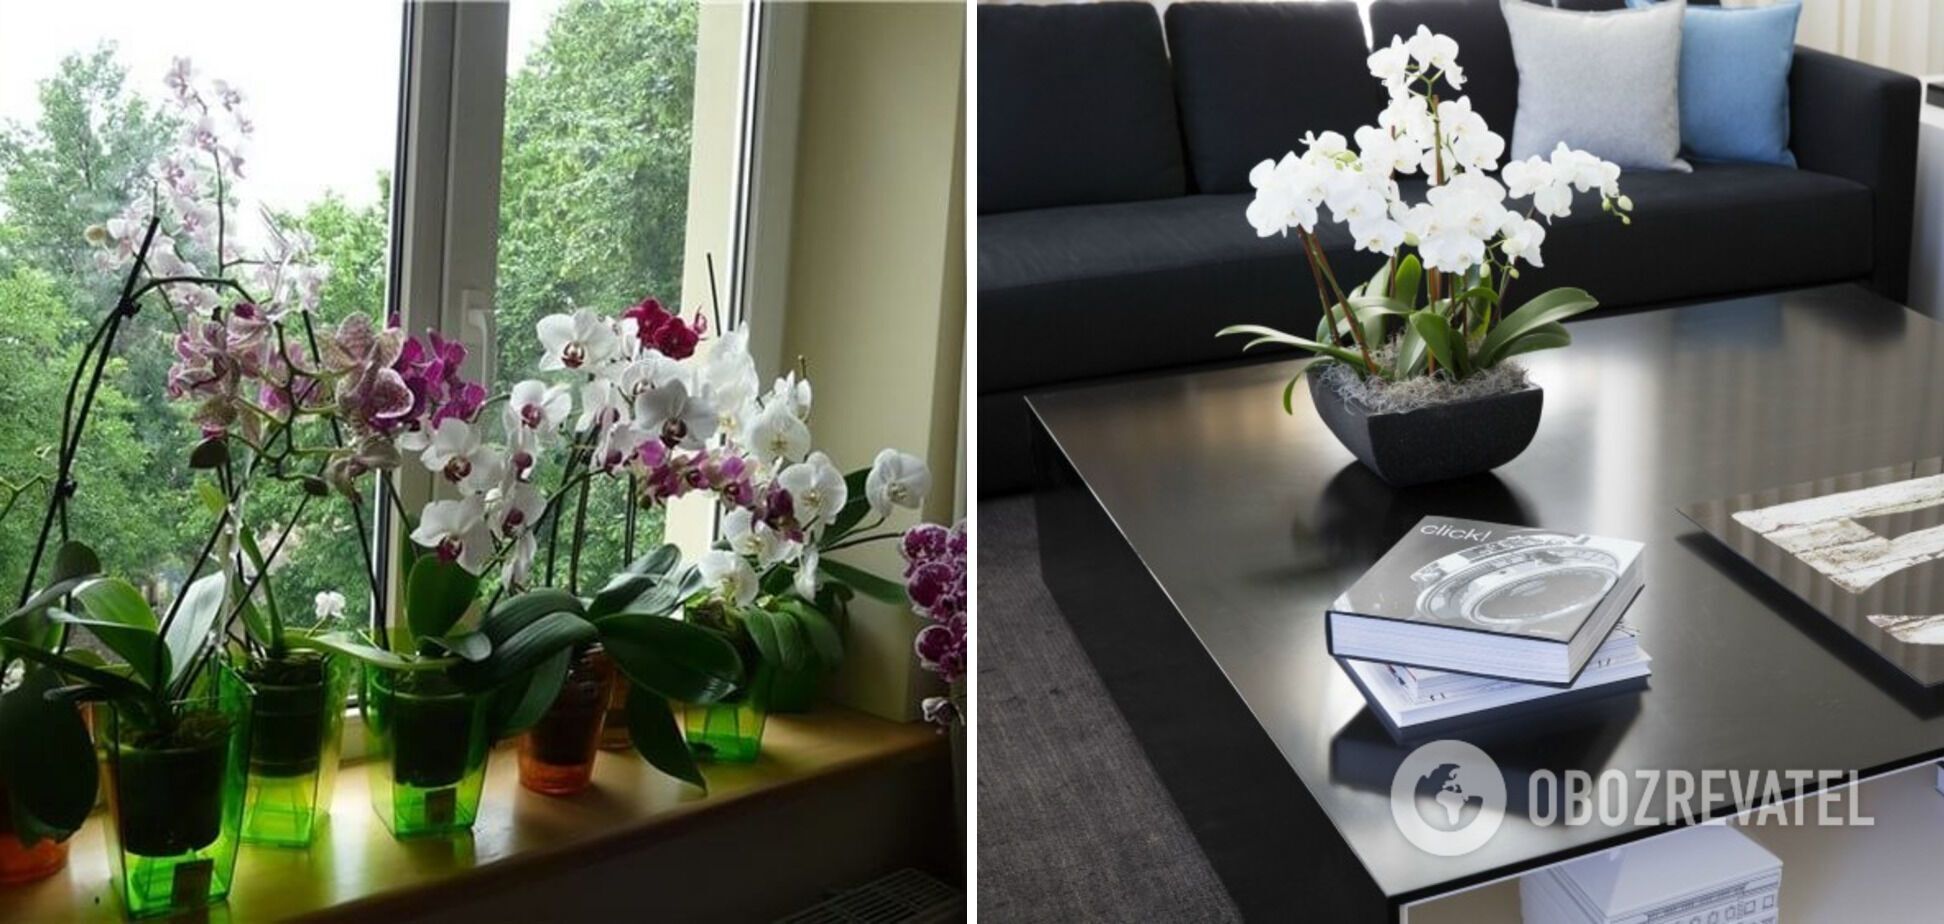 Самые яркие комнатные цветы: как растения станут украшением интерьера. Фото